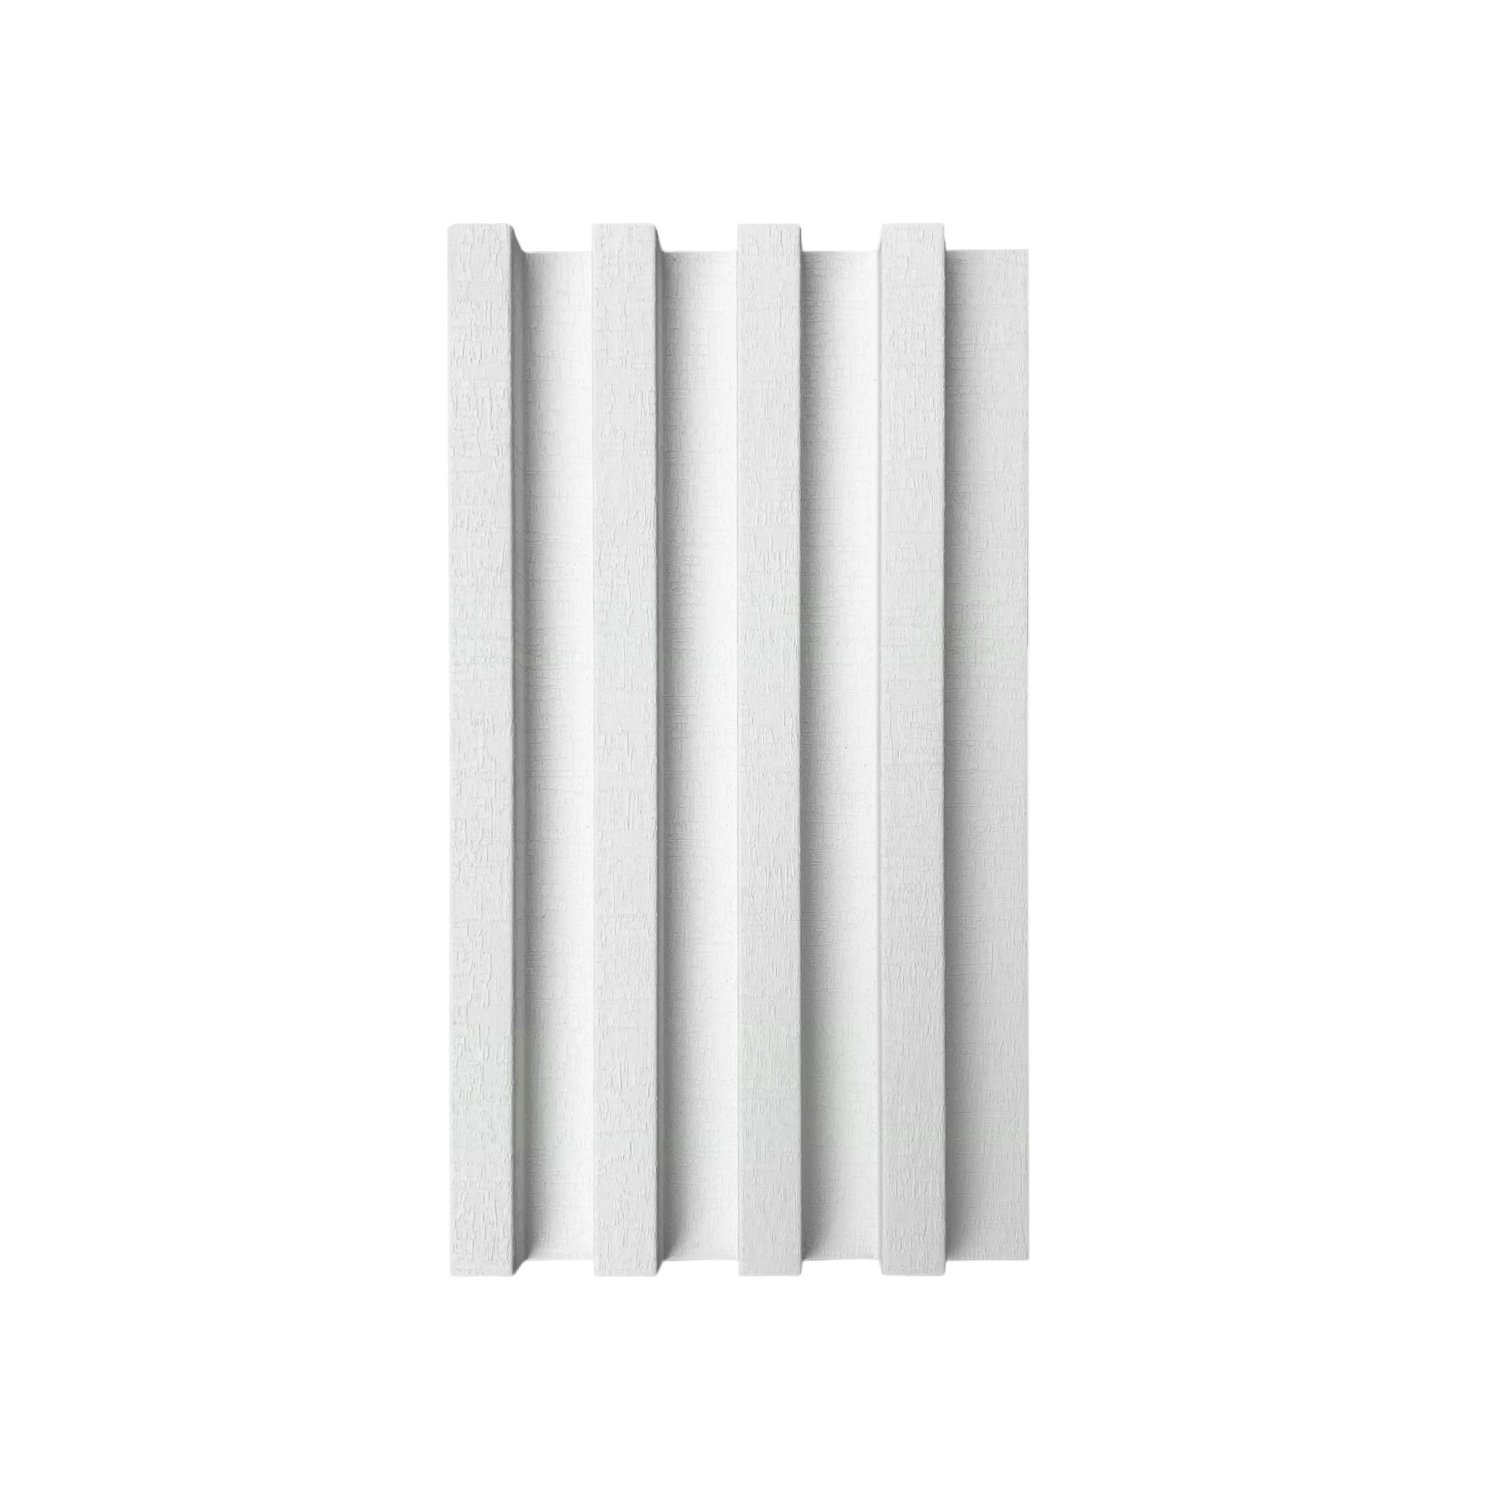 Panneau cannelé WPC, blanc canevas, 6-11/16'' x 96''